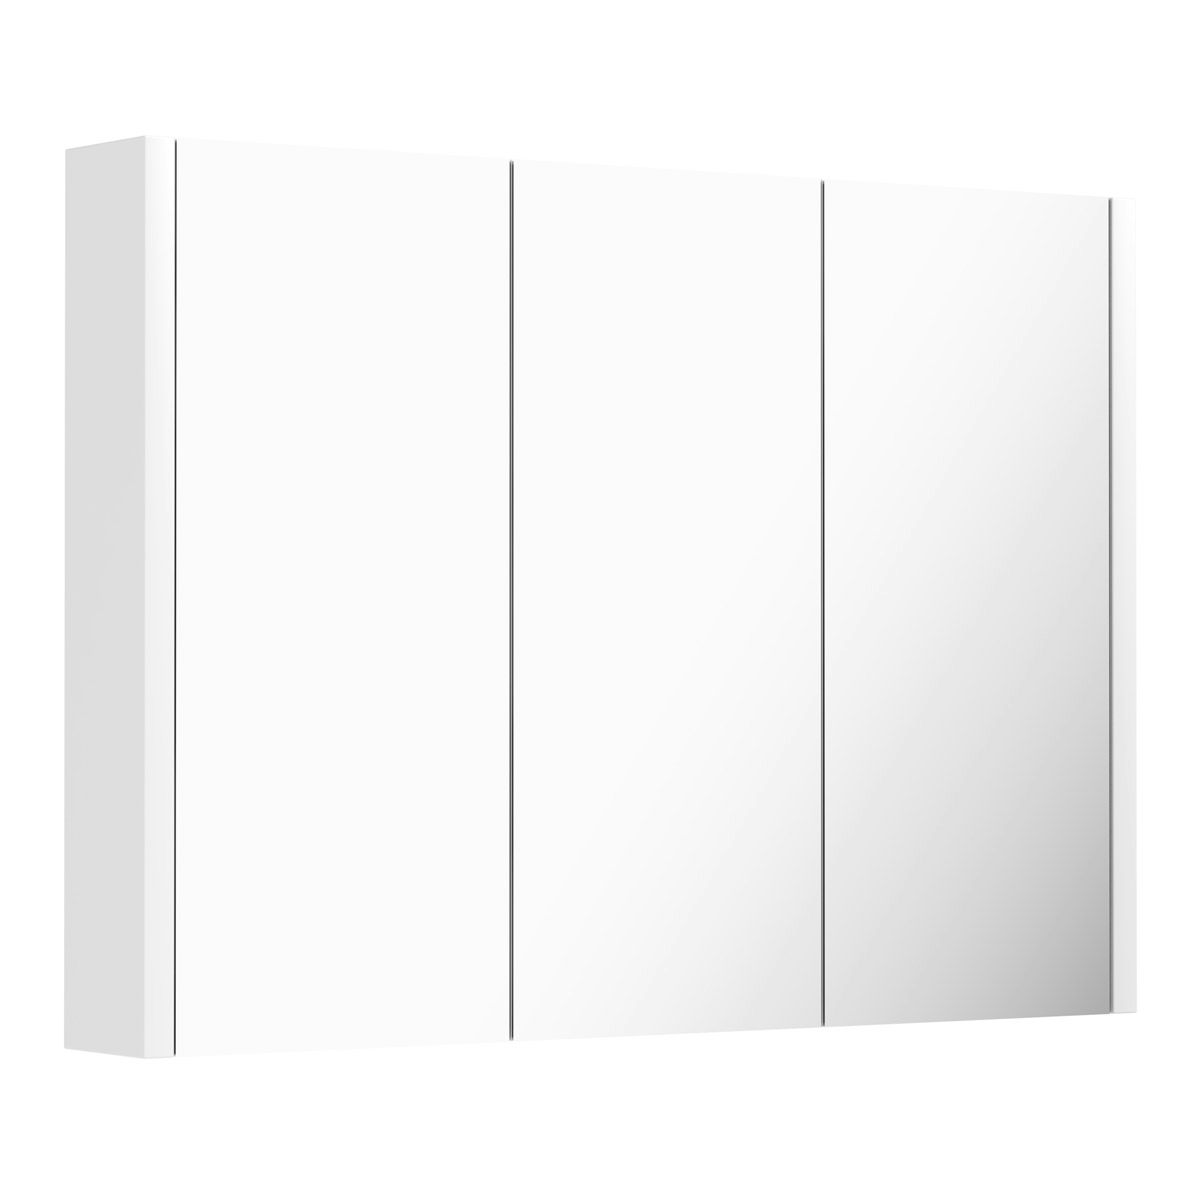 Design Modern 900mm Gloss White Bathroom 3 Doors Mirror Cabinet Storage